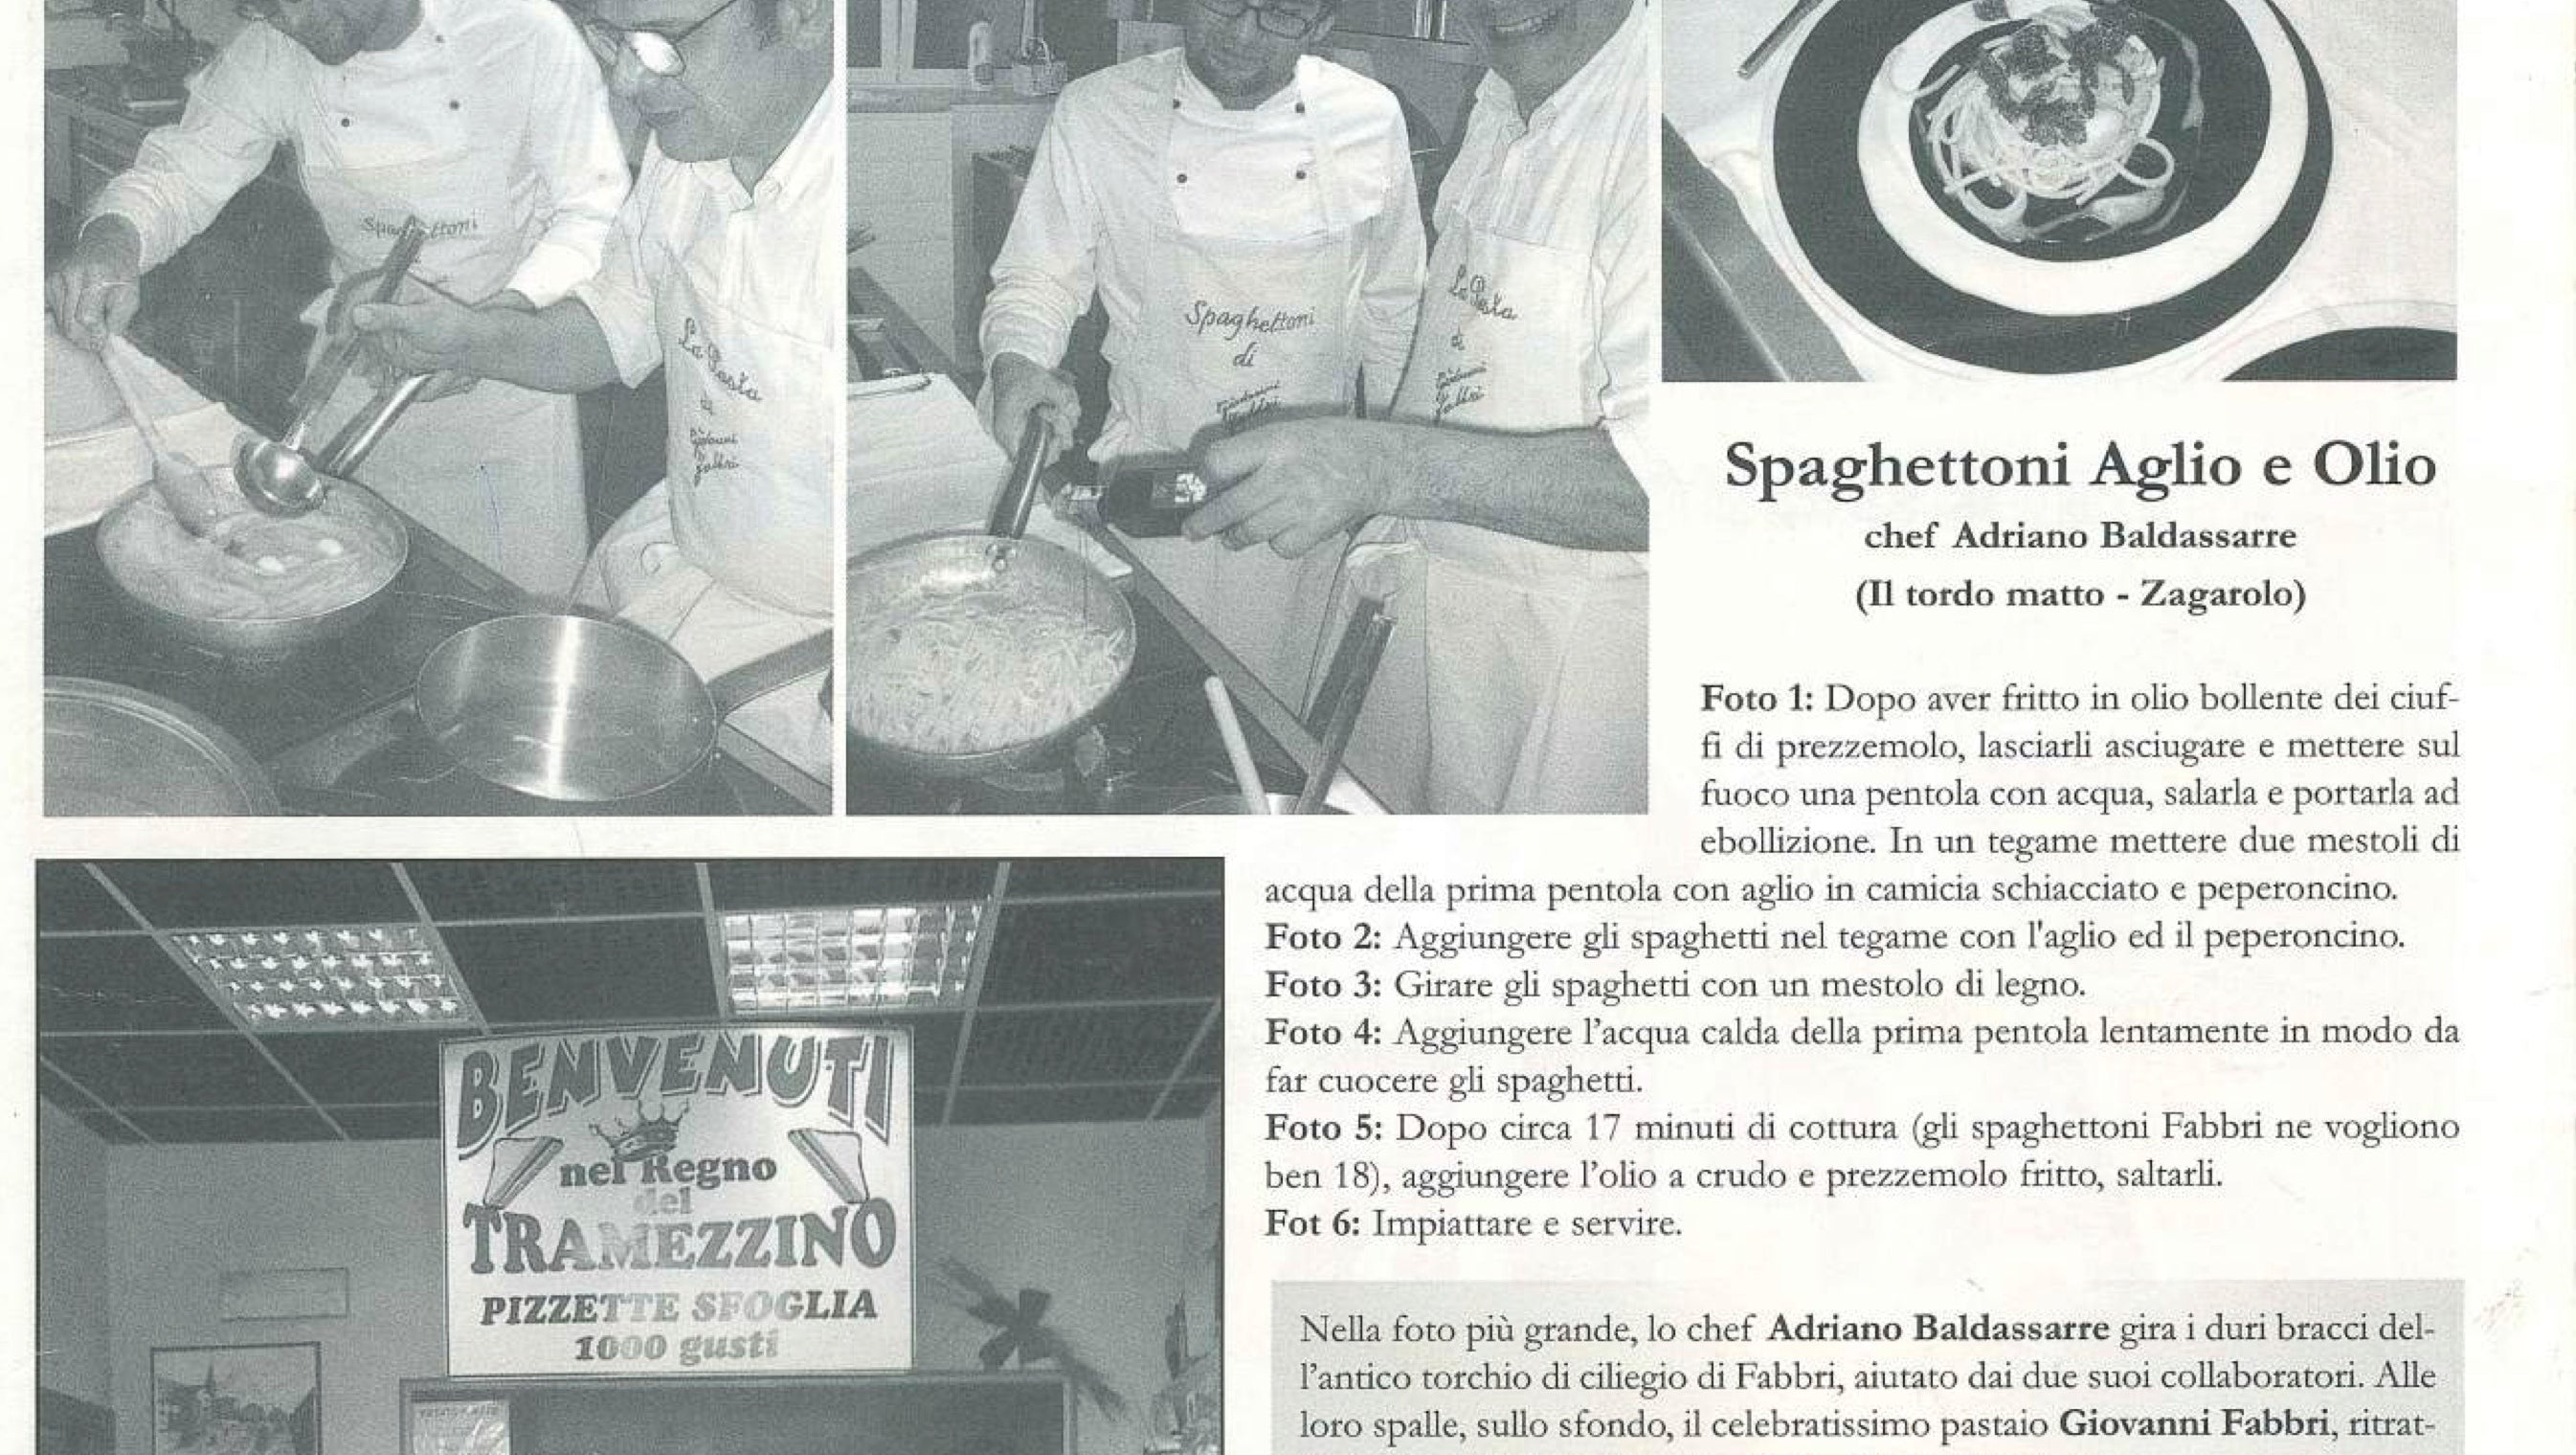 “I migliori spaghettoni sono quelli di Giovanni Fabbri” confessa lo chef Adriano Baldassare nella rivista “Quaderni”